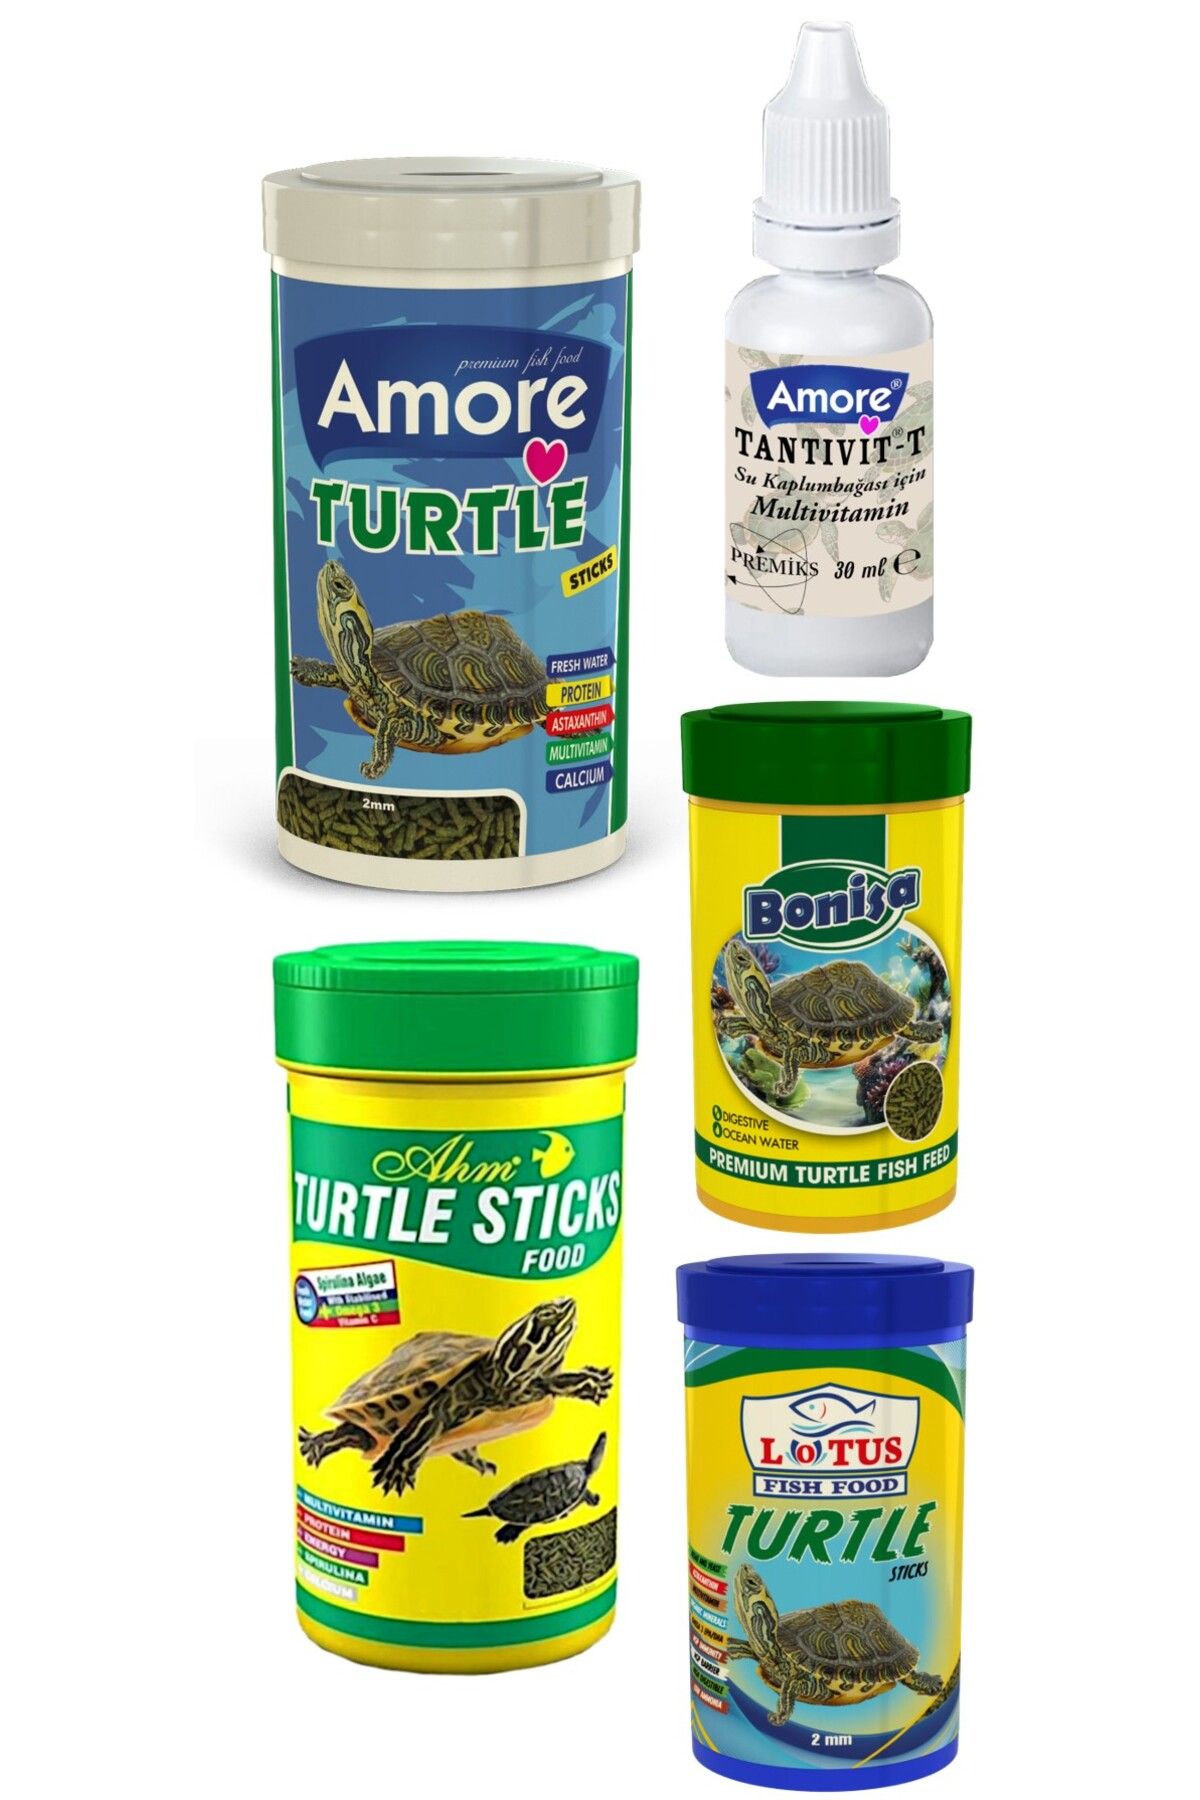 Amore Turtle Green Sticks 250ml, Ahm-250, Bonisa-100, Lotus-100 Su Kaplumbağası Yüzen Yemi, Multivitamin